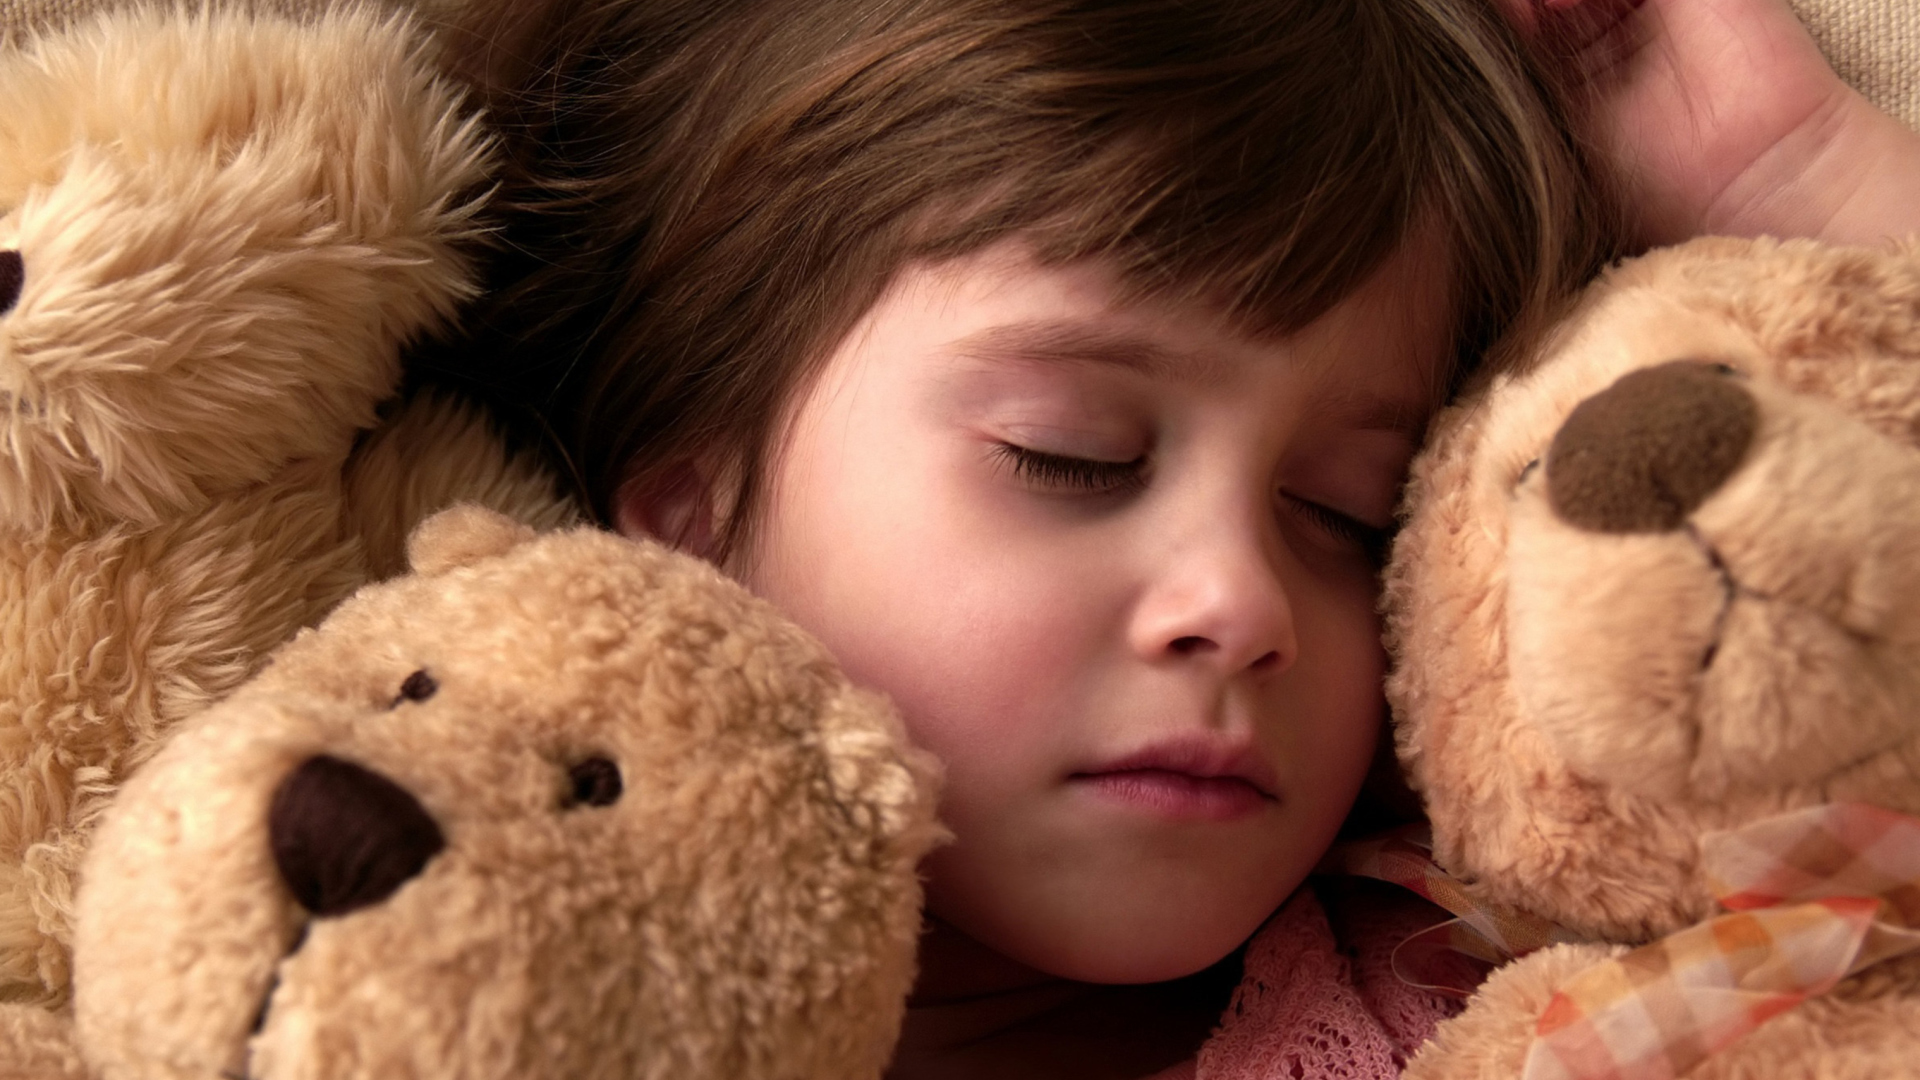 Обои Child Sleeping With Teddy Bear 1920x1080